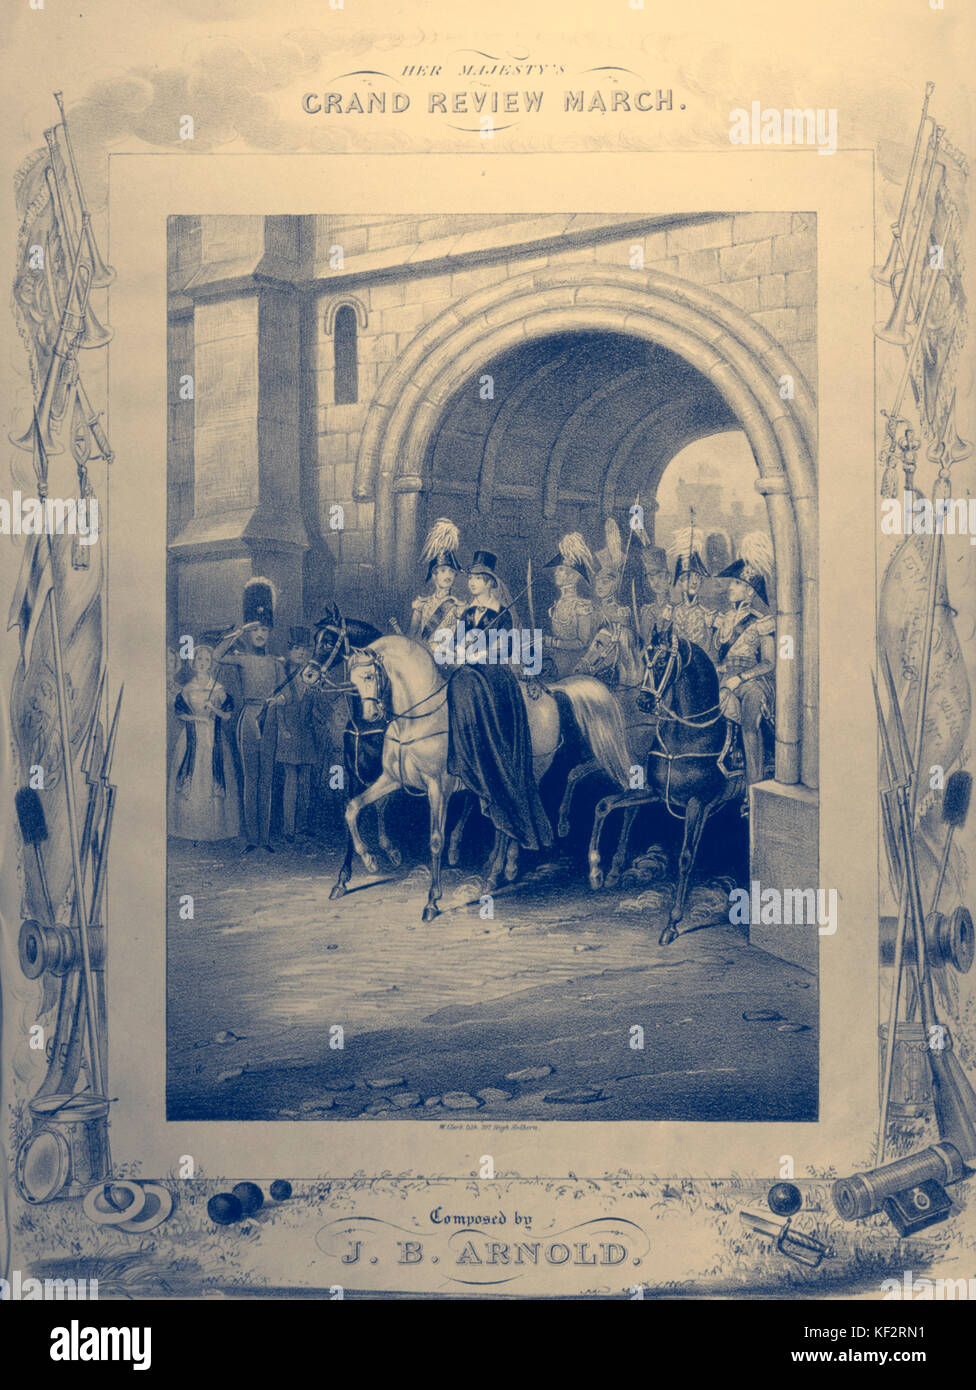 VICTORIA & ALBERT - Grand Review März Abdeckung von Score, c 1840, Victoria and Albert, reiten durch Tor auf dem Pferd. Musik von J B Arnold Stockfoto